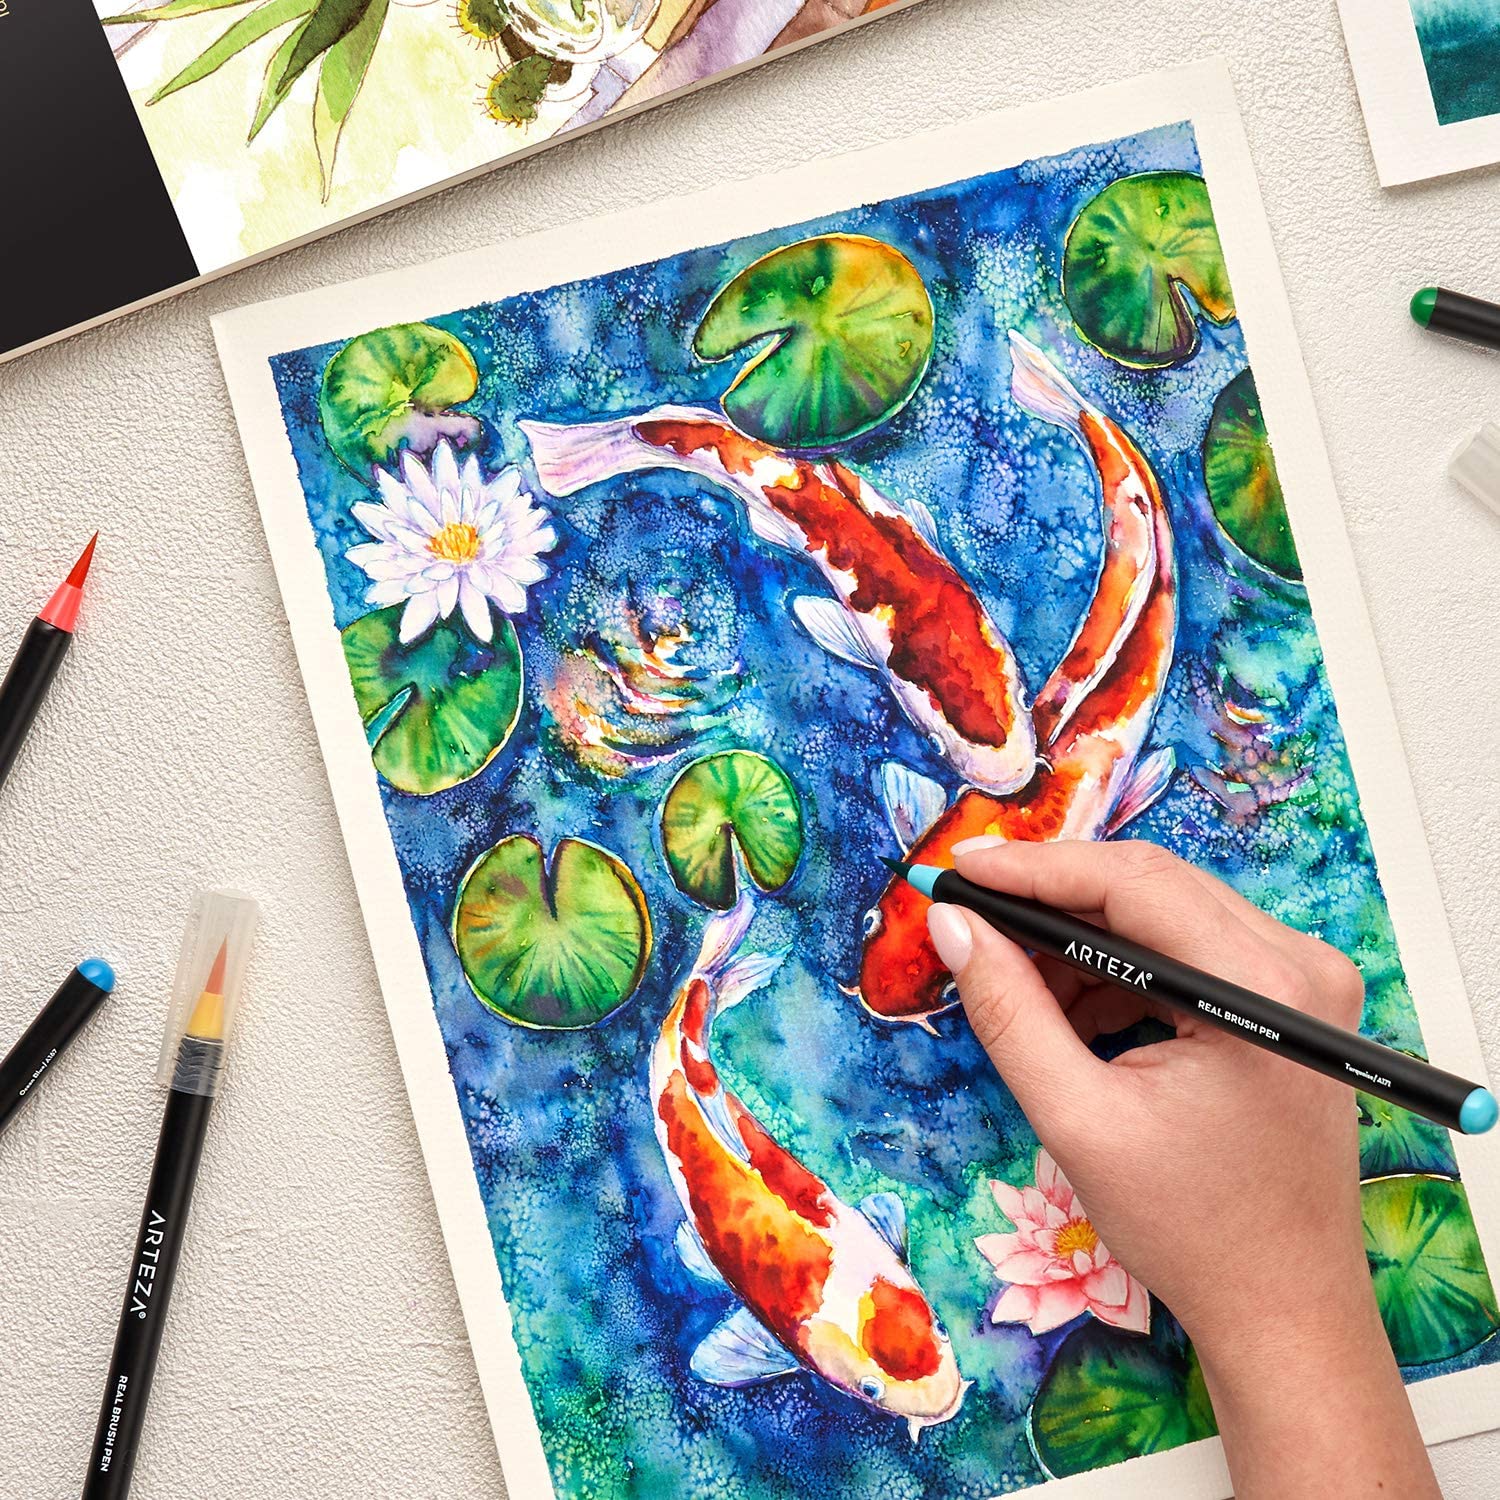 9 x 12 Pro Art Watercolor Paper Pad — Art Spot Studio